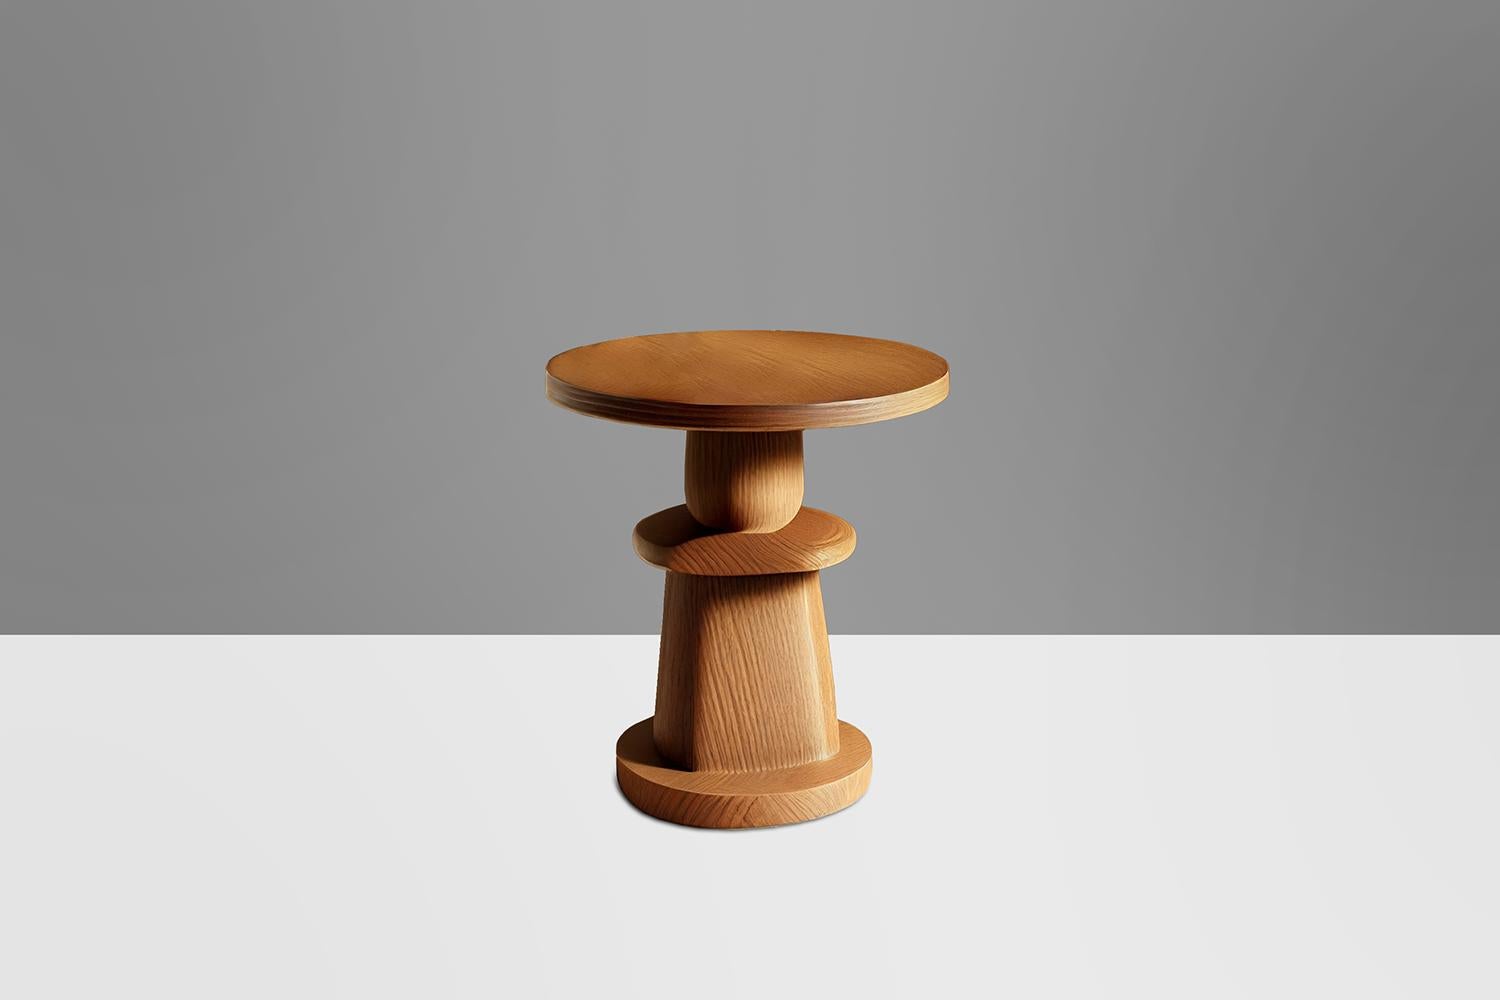 Table d'appoint Socle 5, Table auxiliaire, Table de nuit 

Socle est une petite table en bois massif conçue par l'équipe de design de NONO. Réalisée en bois massif, sa construction élaborée sert de support, à l'instar d'un socle pour une statue ou